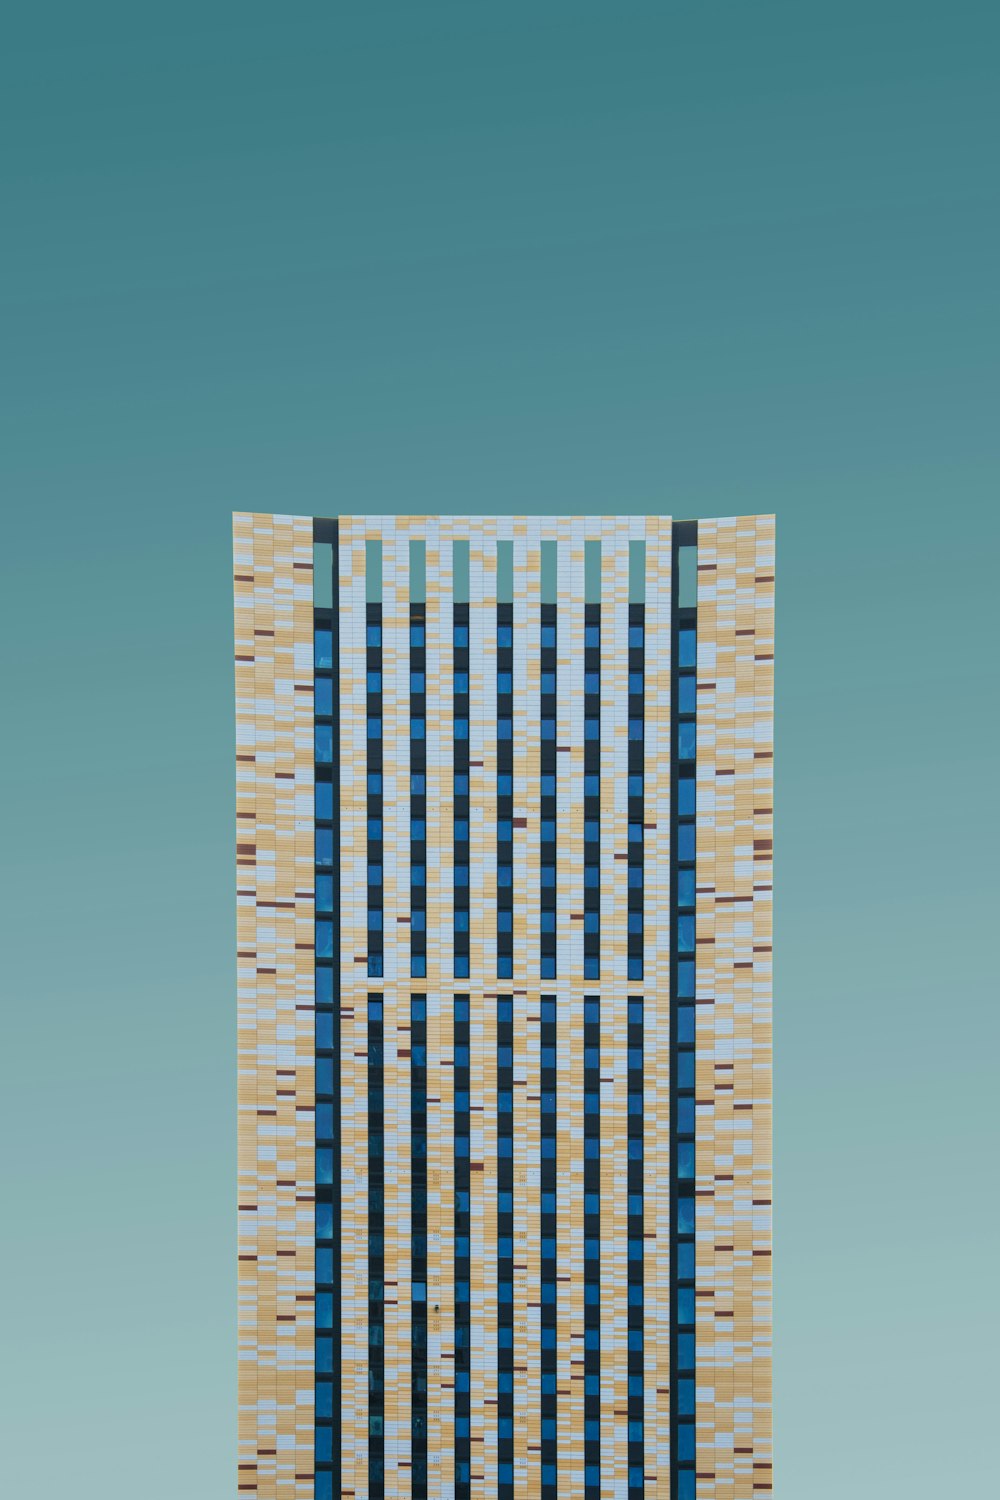 Un edificio alto con un cielo azul en el fondo